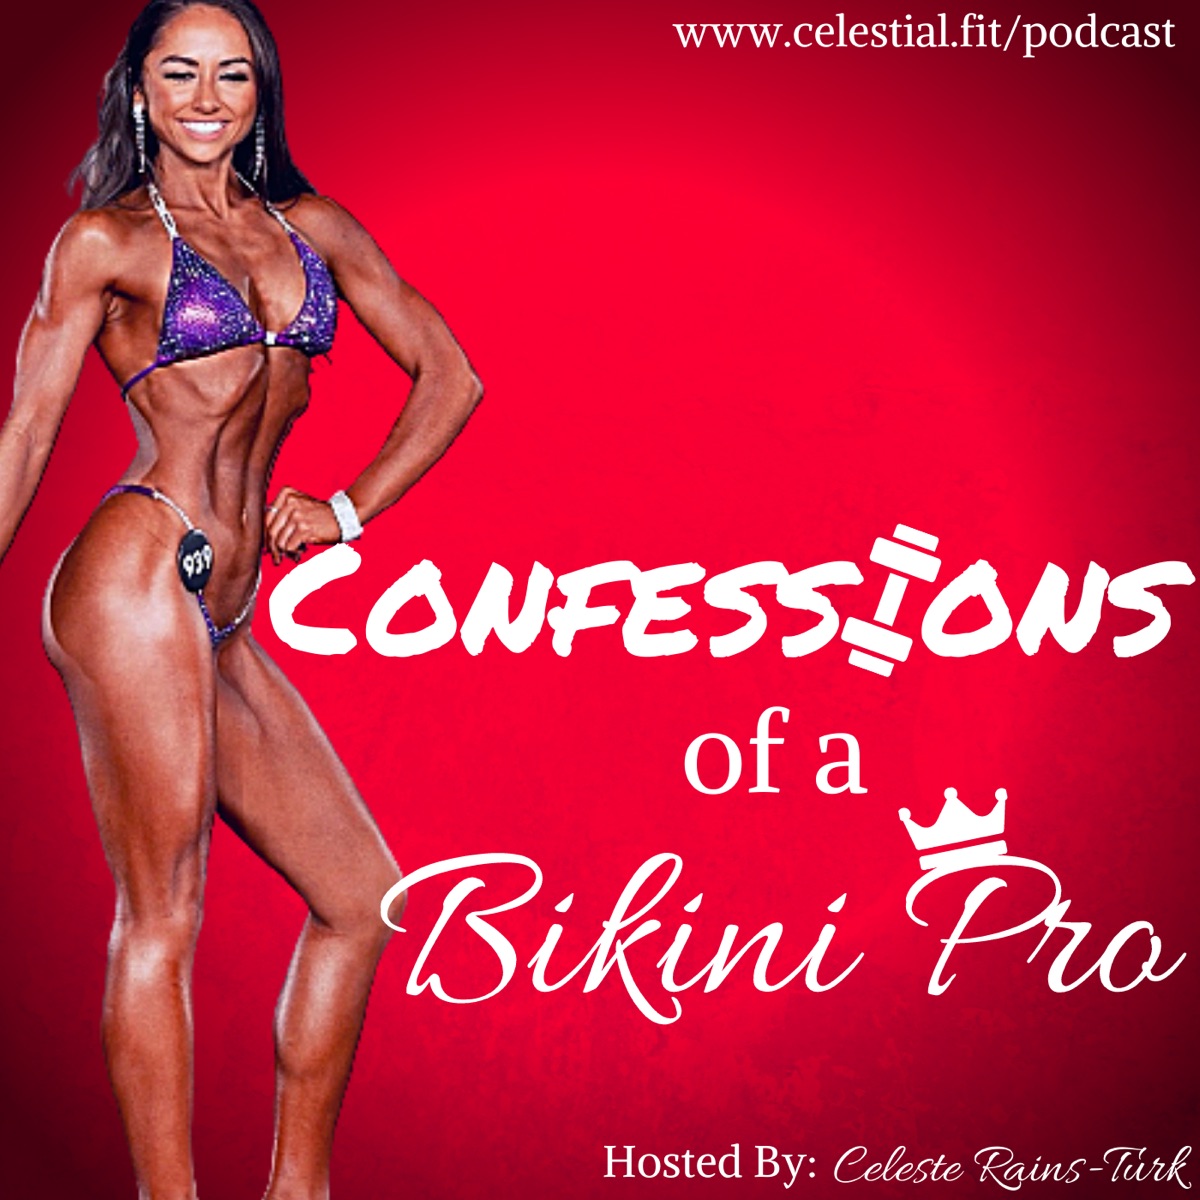 Confessions of a Bikini Pro – Podcast